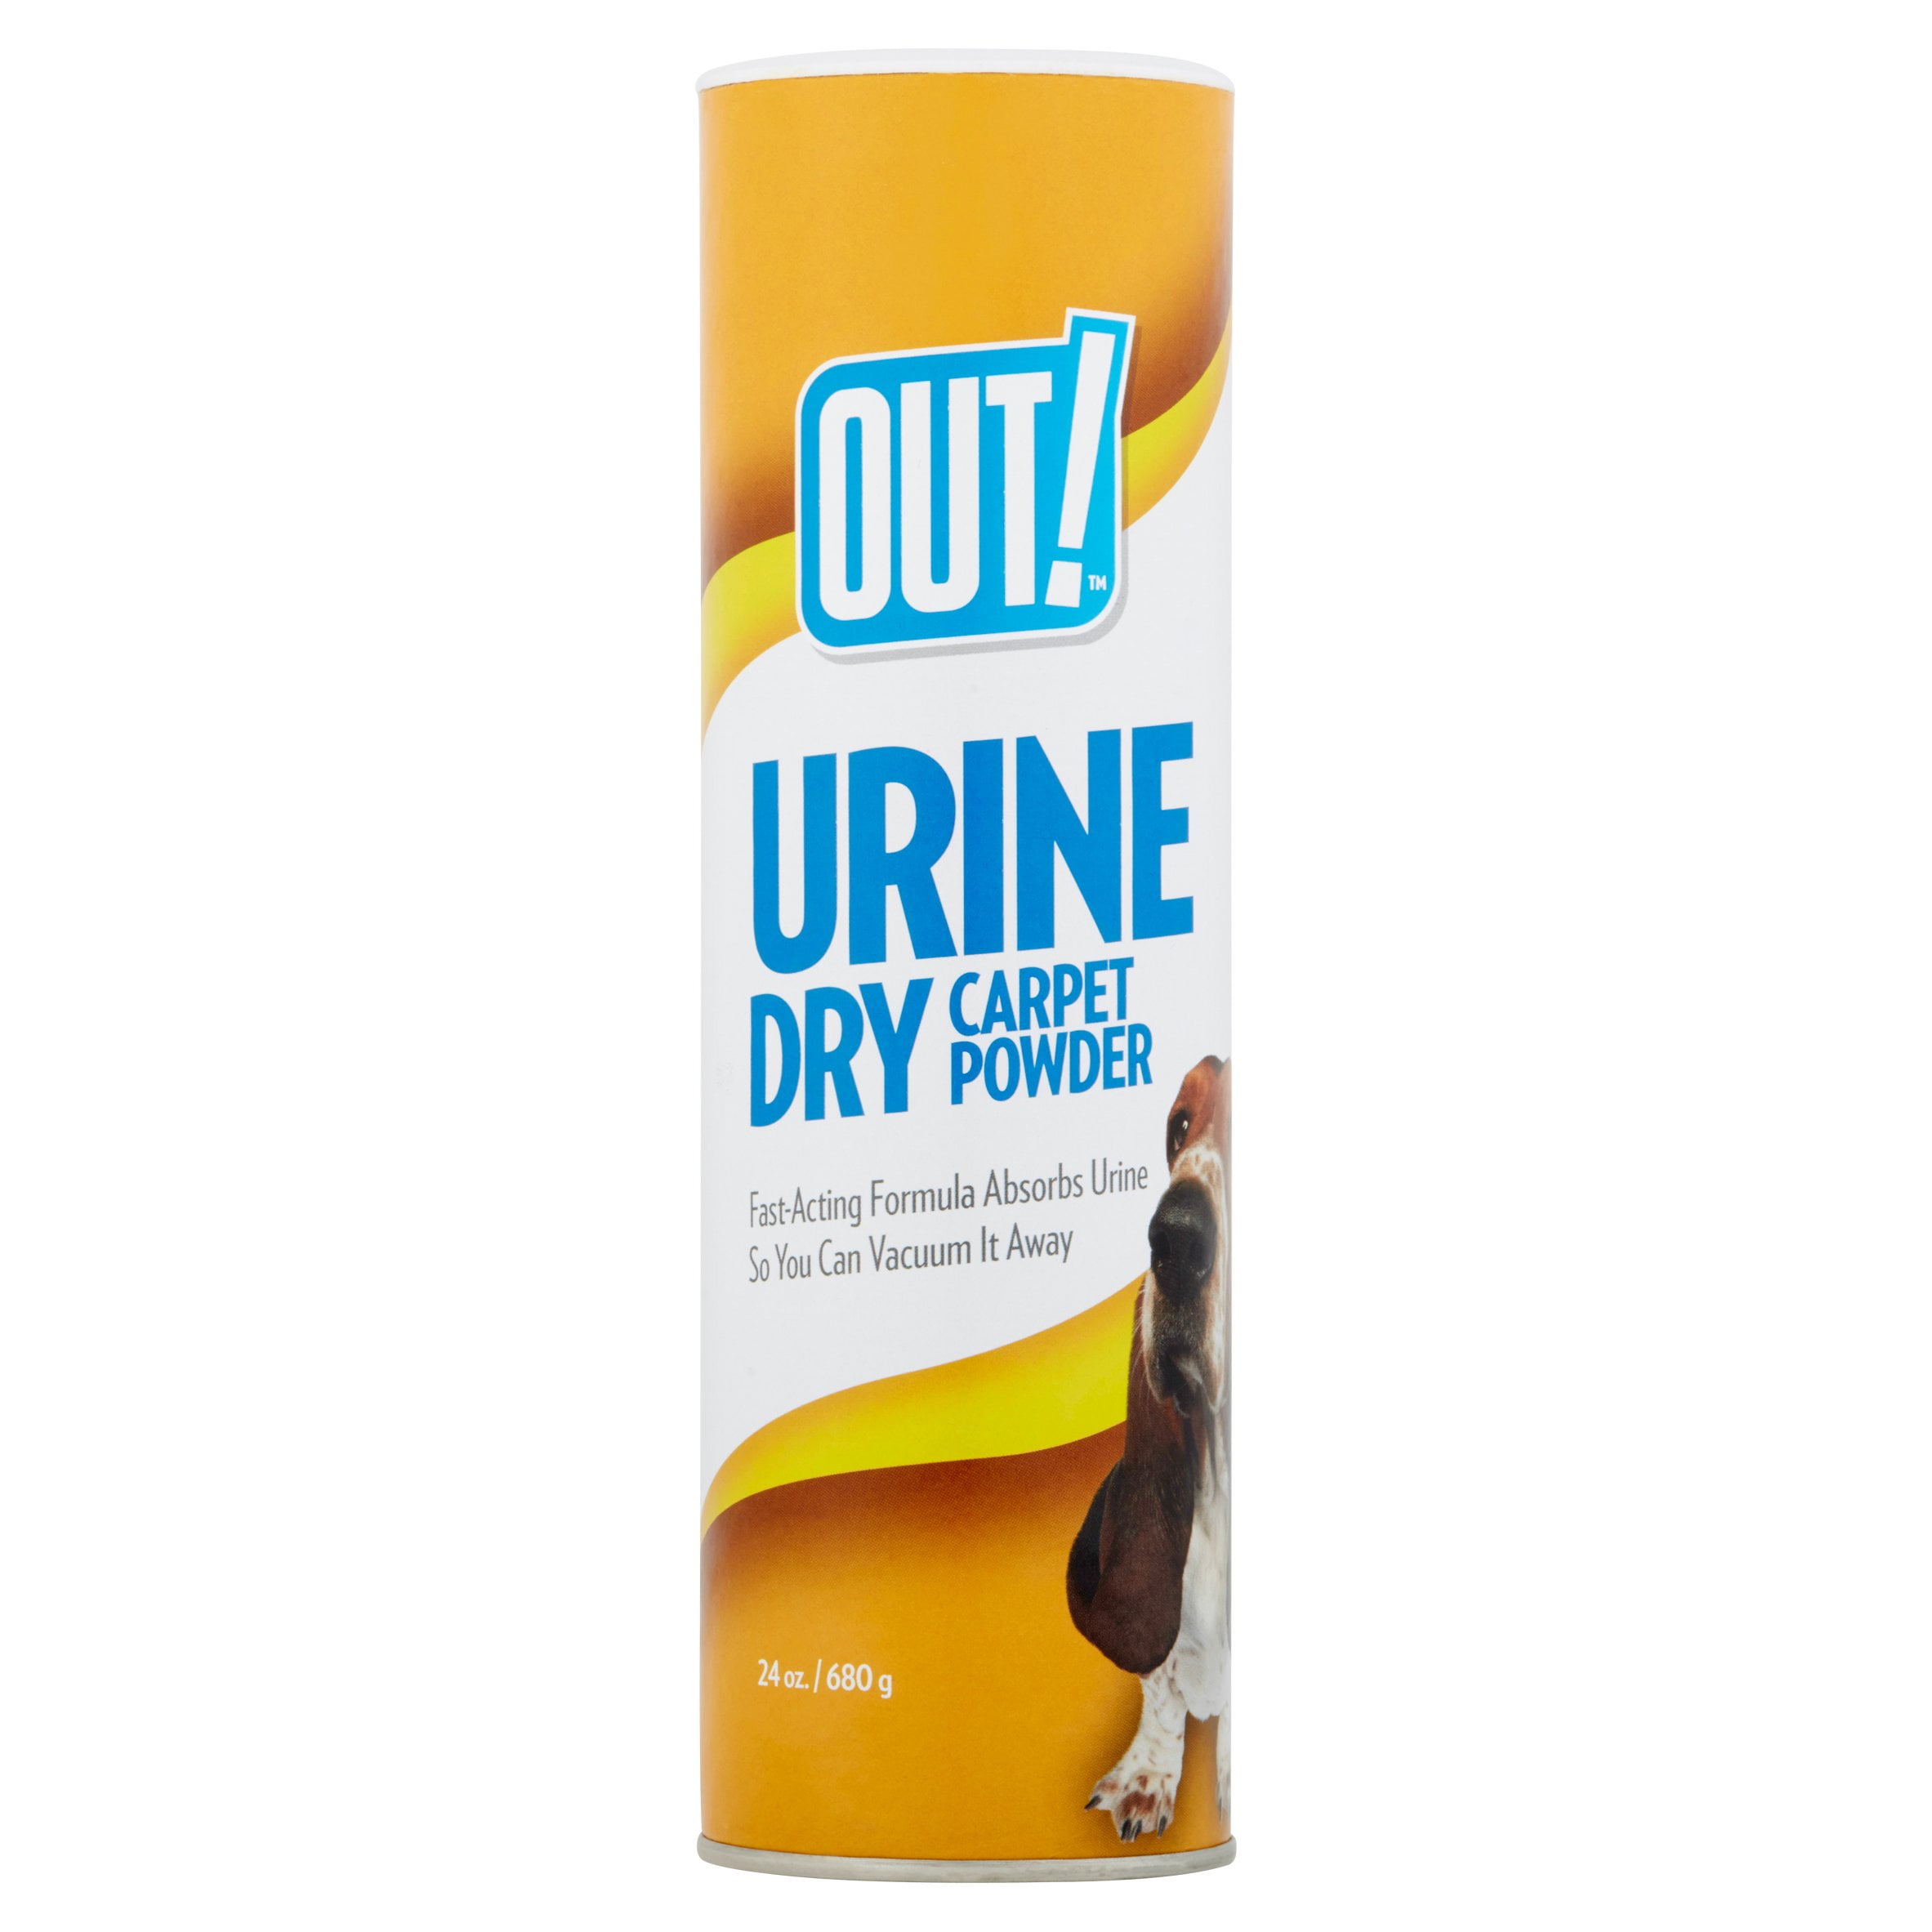 Out! Urine Dry Carpet Powder, 22 oz